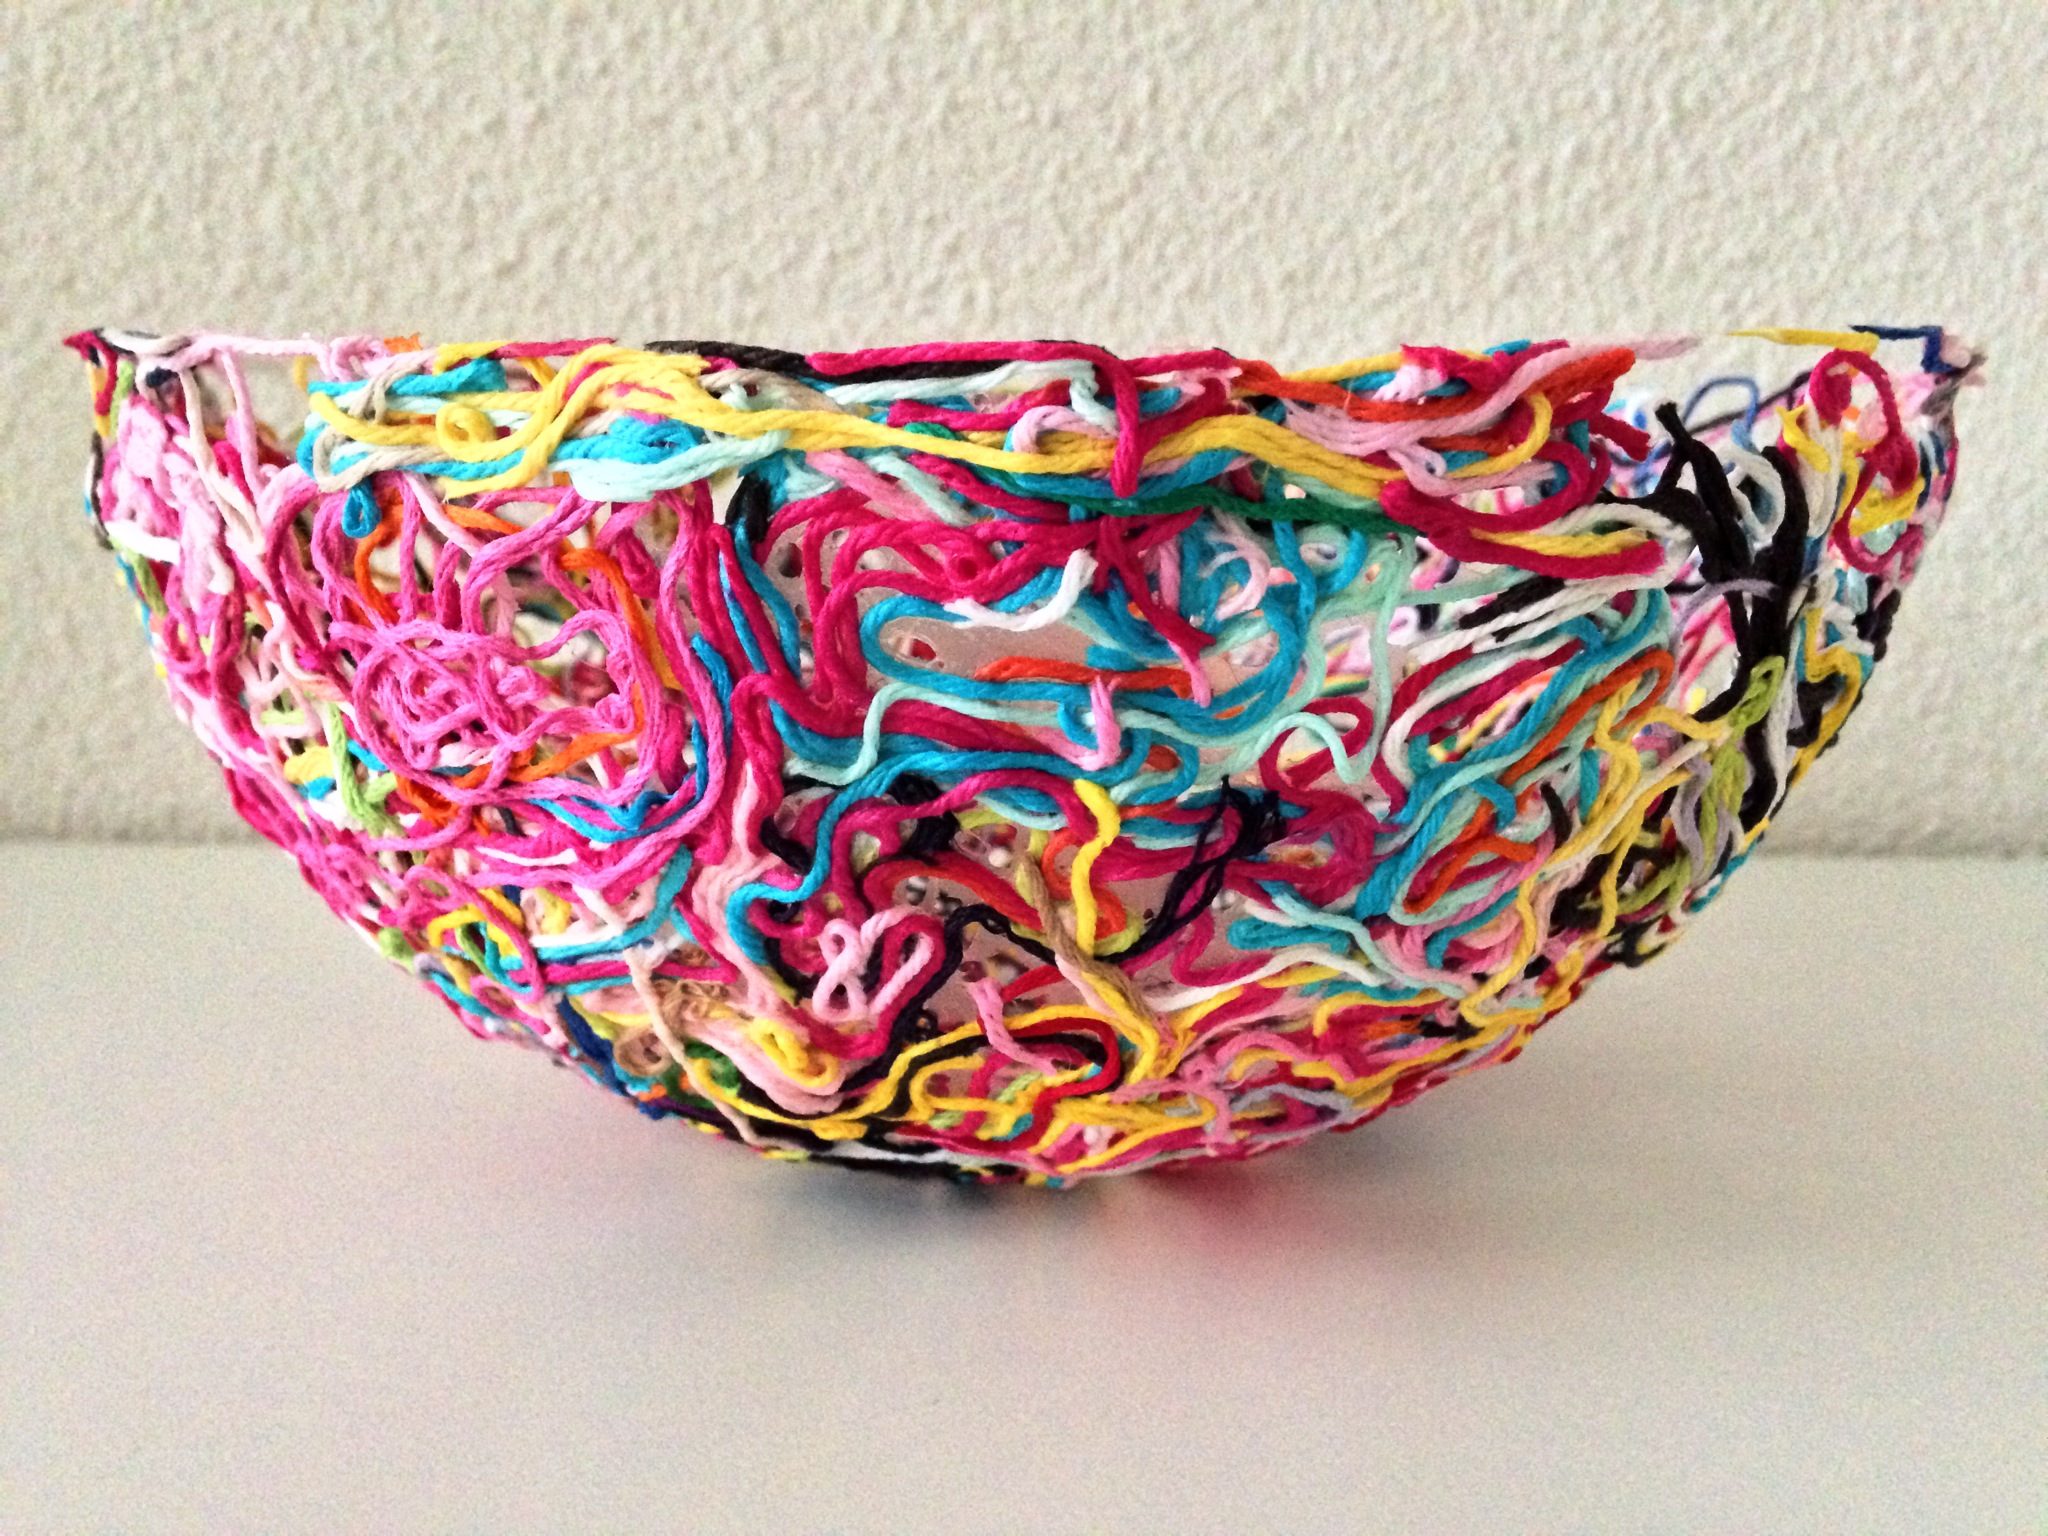 Yarn Decorative Bowls